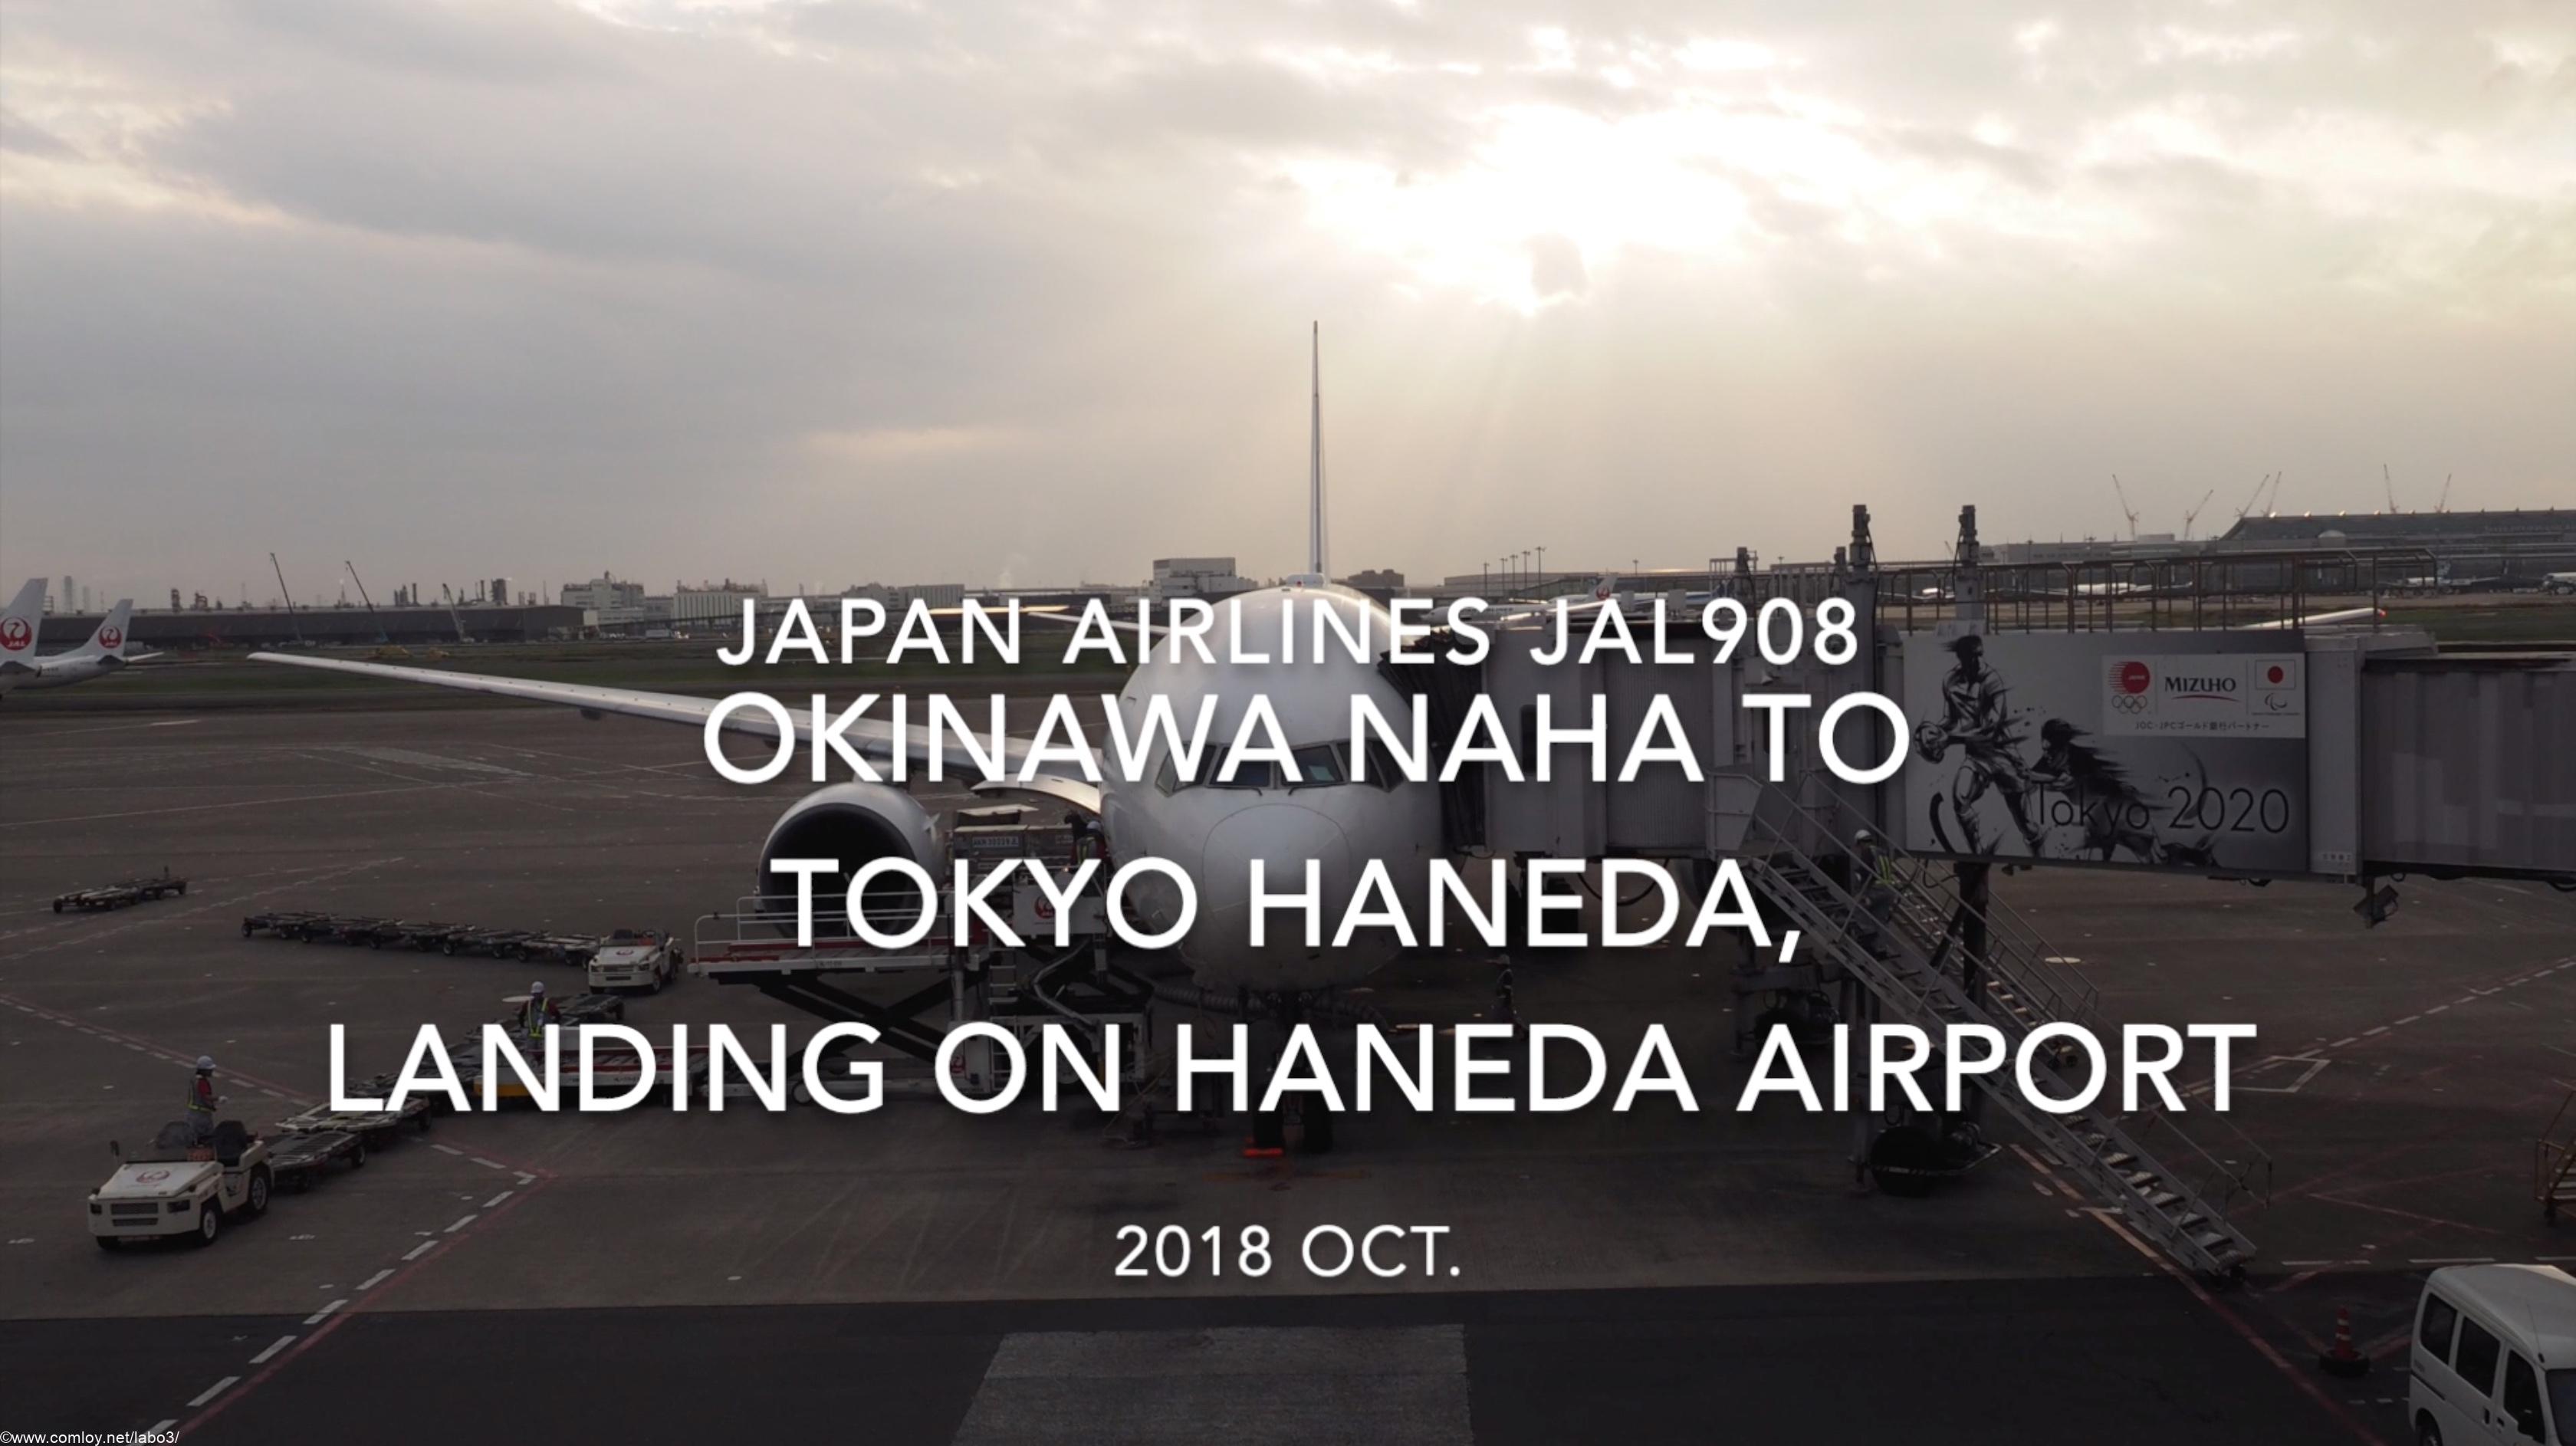 【機内から離着陸映像】2018 Oct. JAPAN Airlines JAL908 OKINAWA NAHA to TOKYO HANEDA, Landing on TOKYO HANEDA airport 日本航空 那覇 -羽田 羽田空港着陸